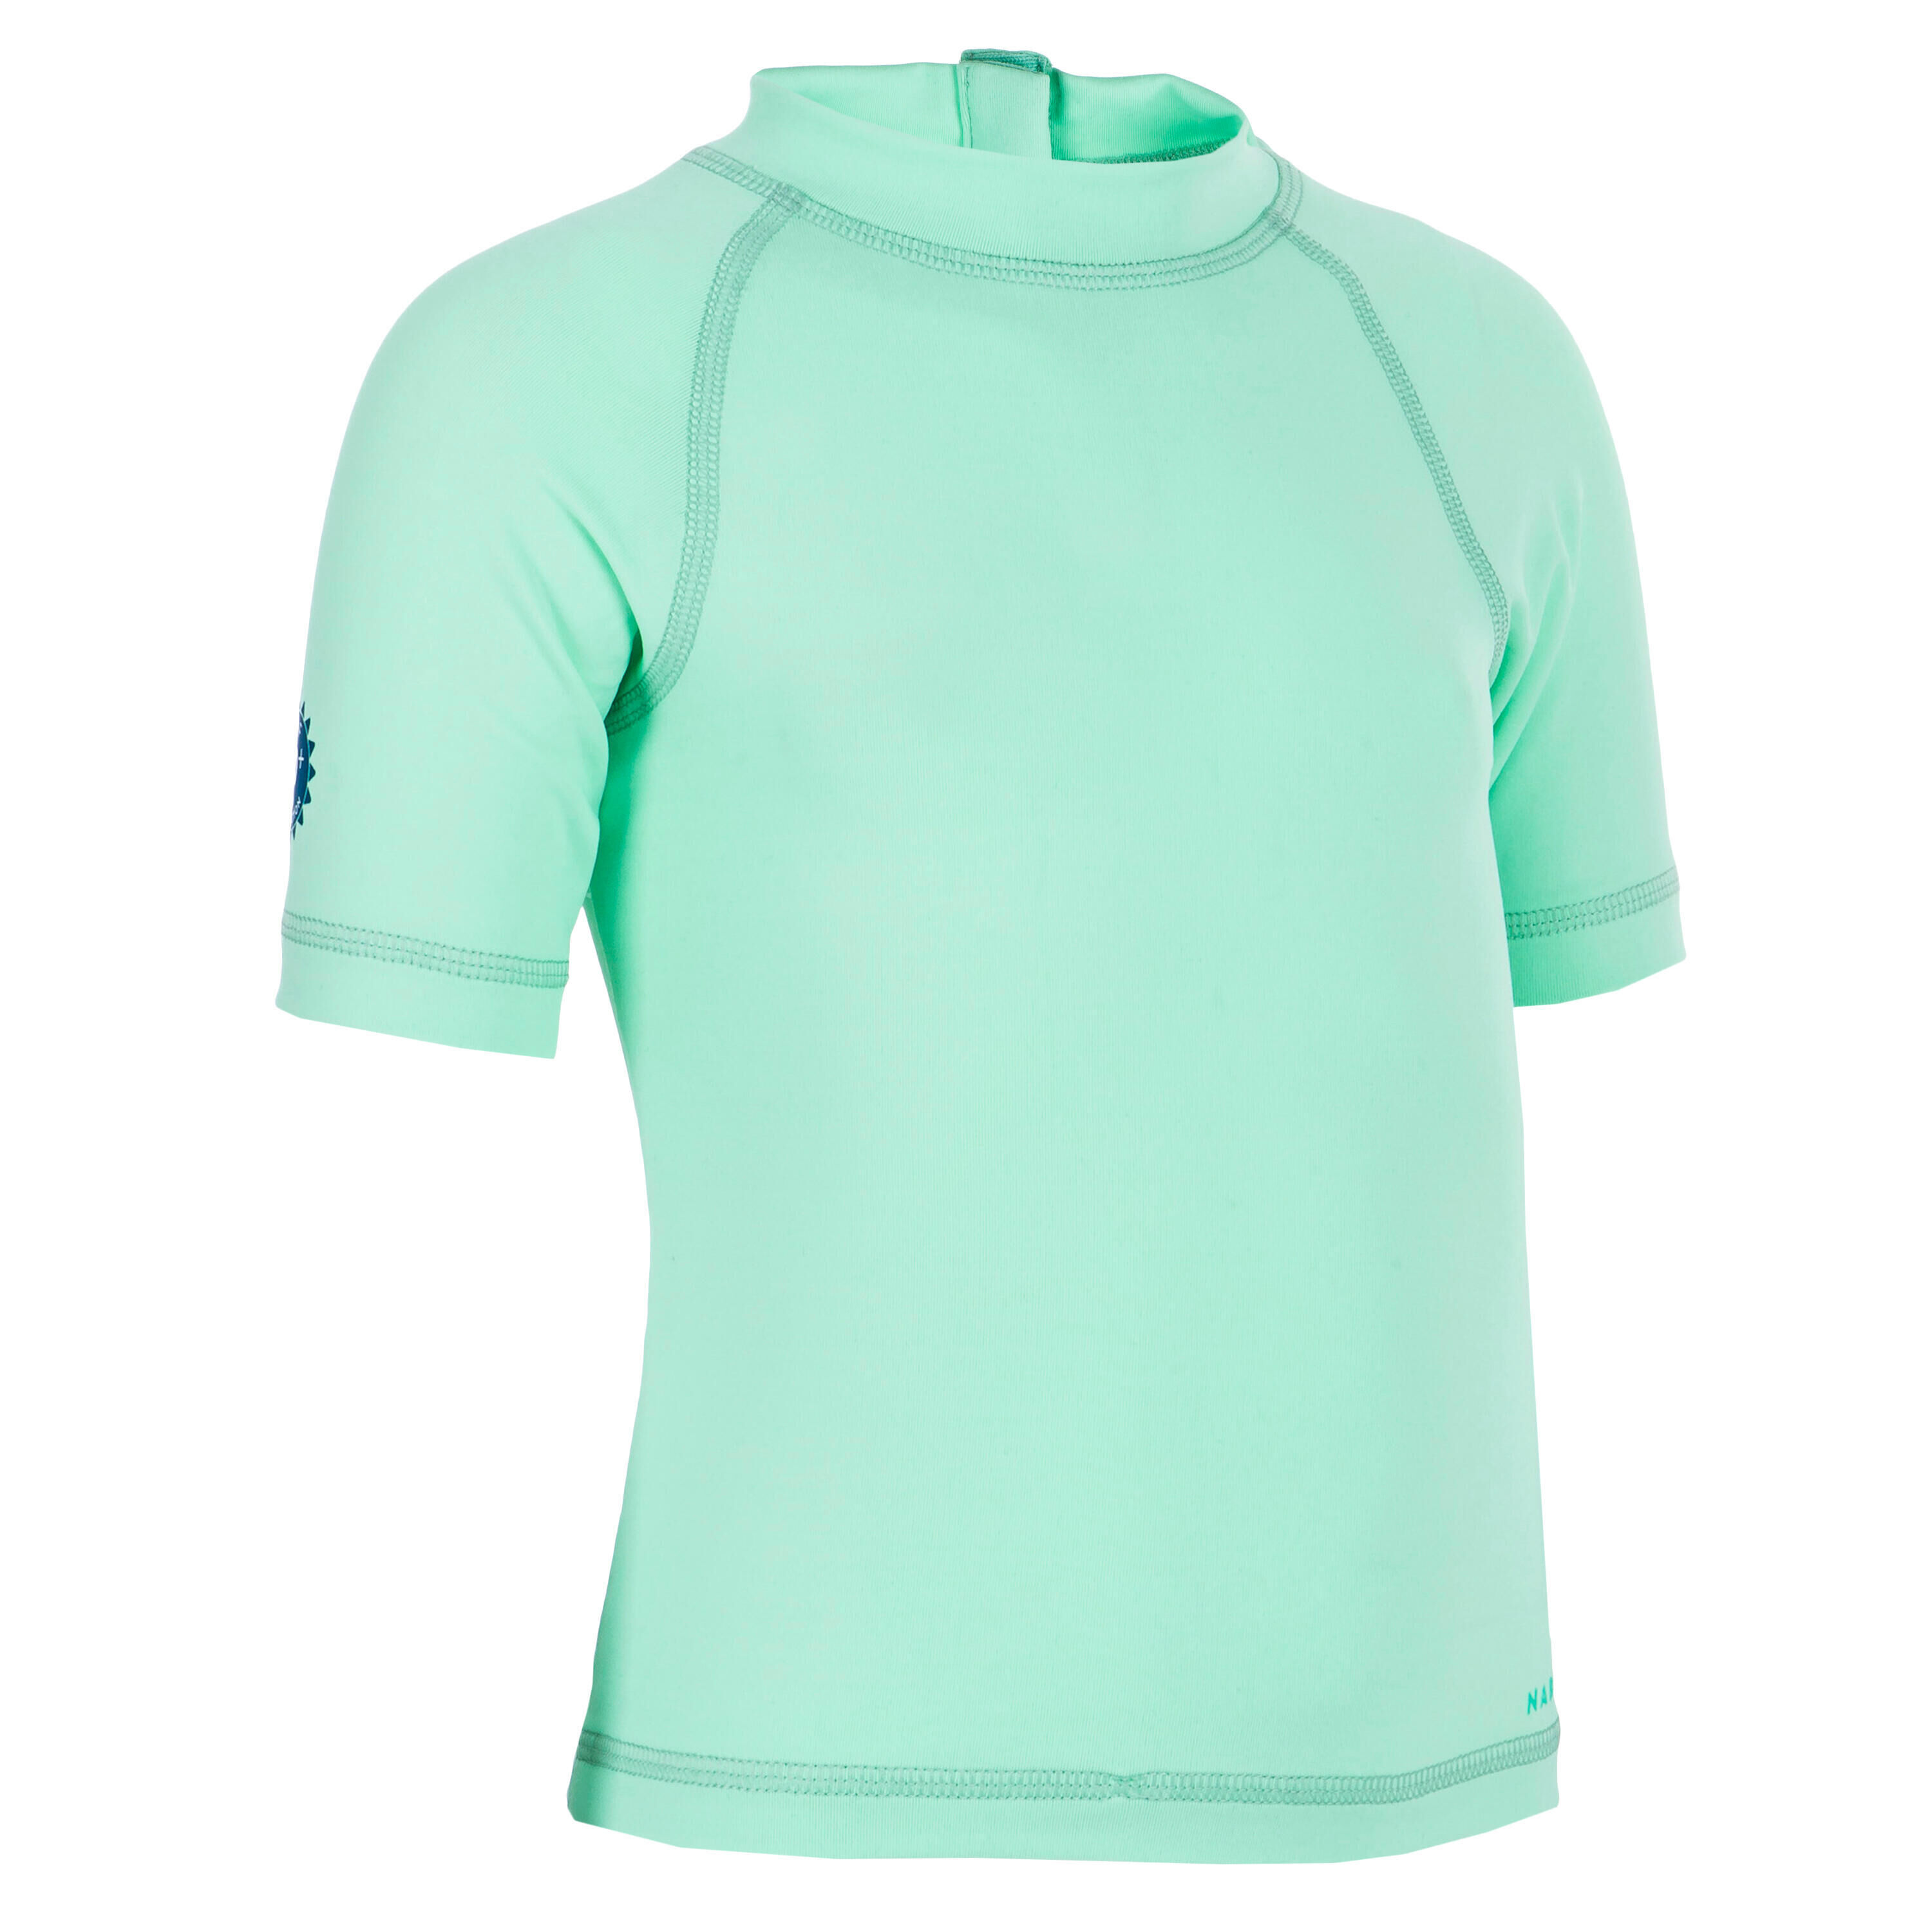 NABAIJI Refurbished Baby UV-Protection Short Sleeve T-Shirt - A Grade